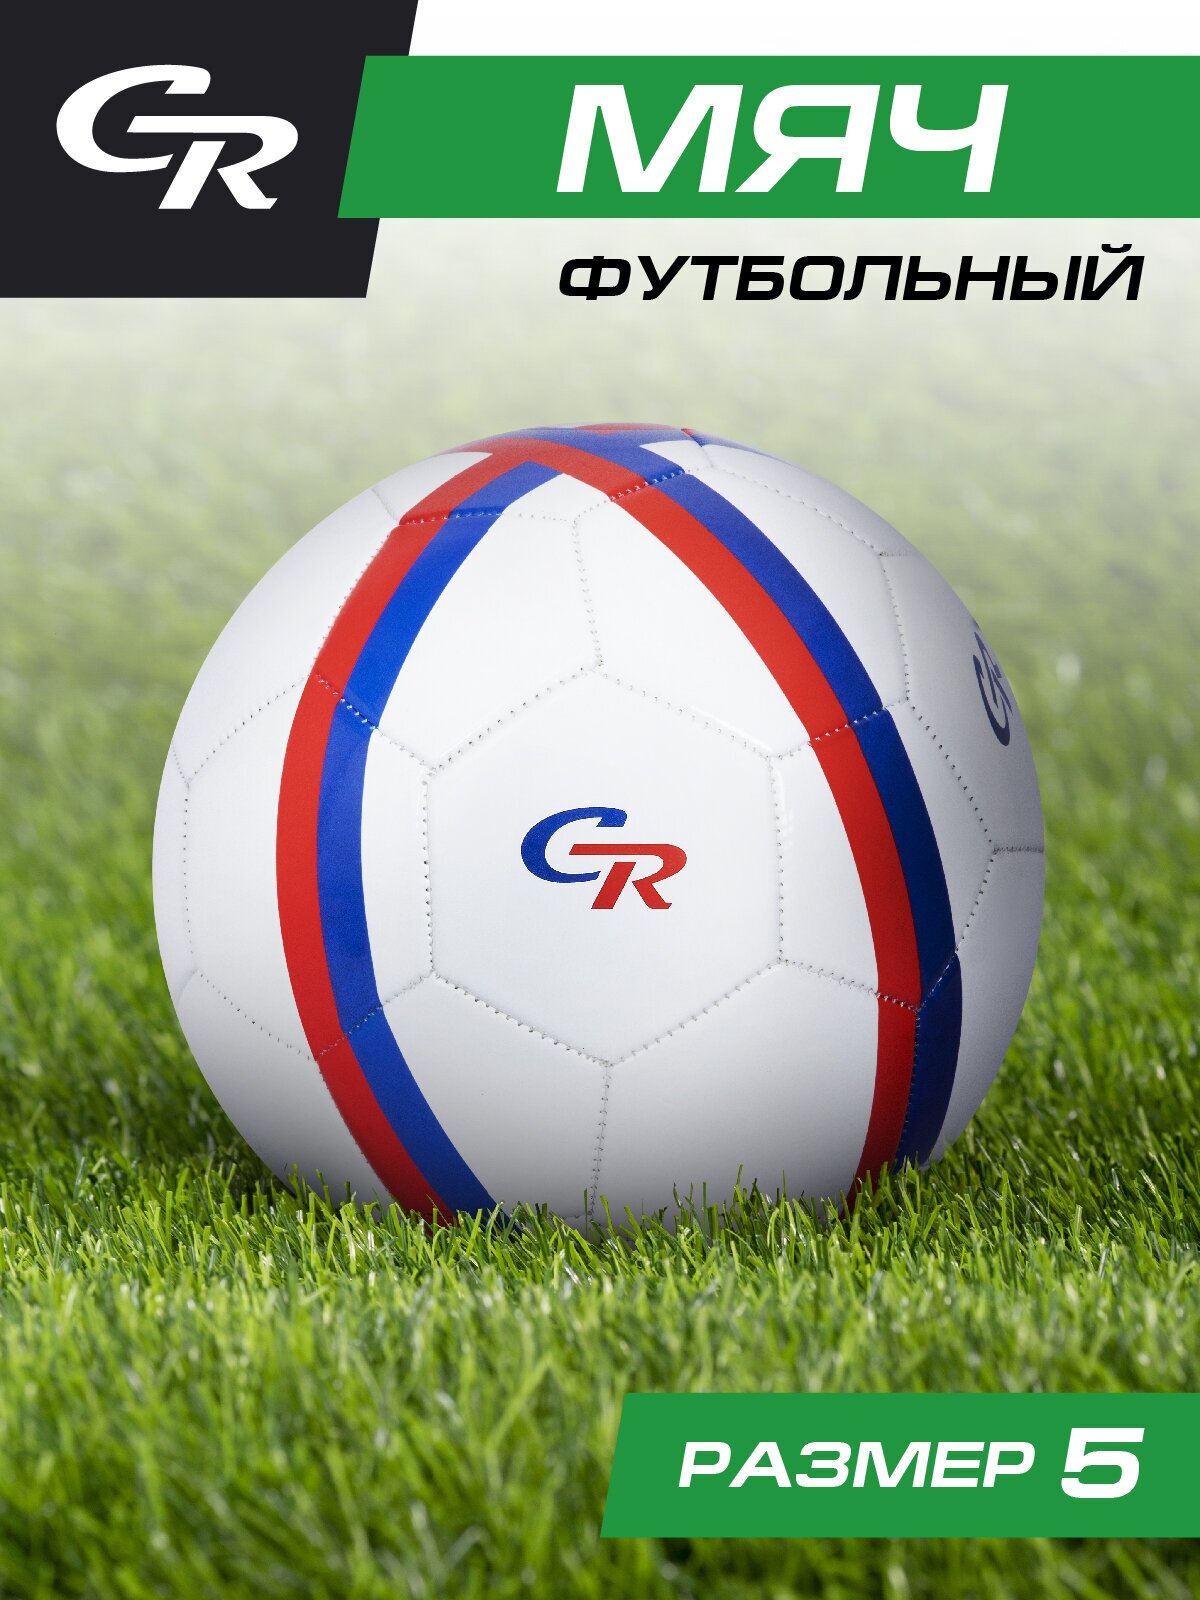 Мяч футбольный ТМ CR, 3-слойный, сшитые панели, ПВХ, размер 5, диаметр 22, JB4300121